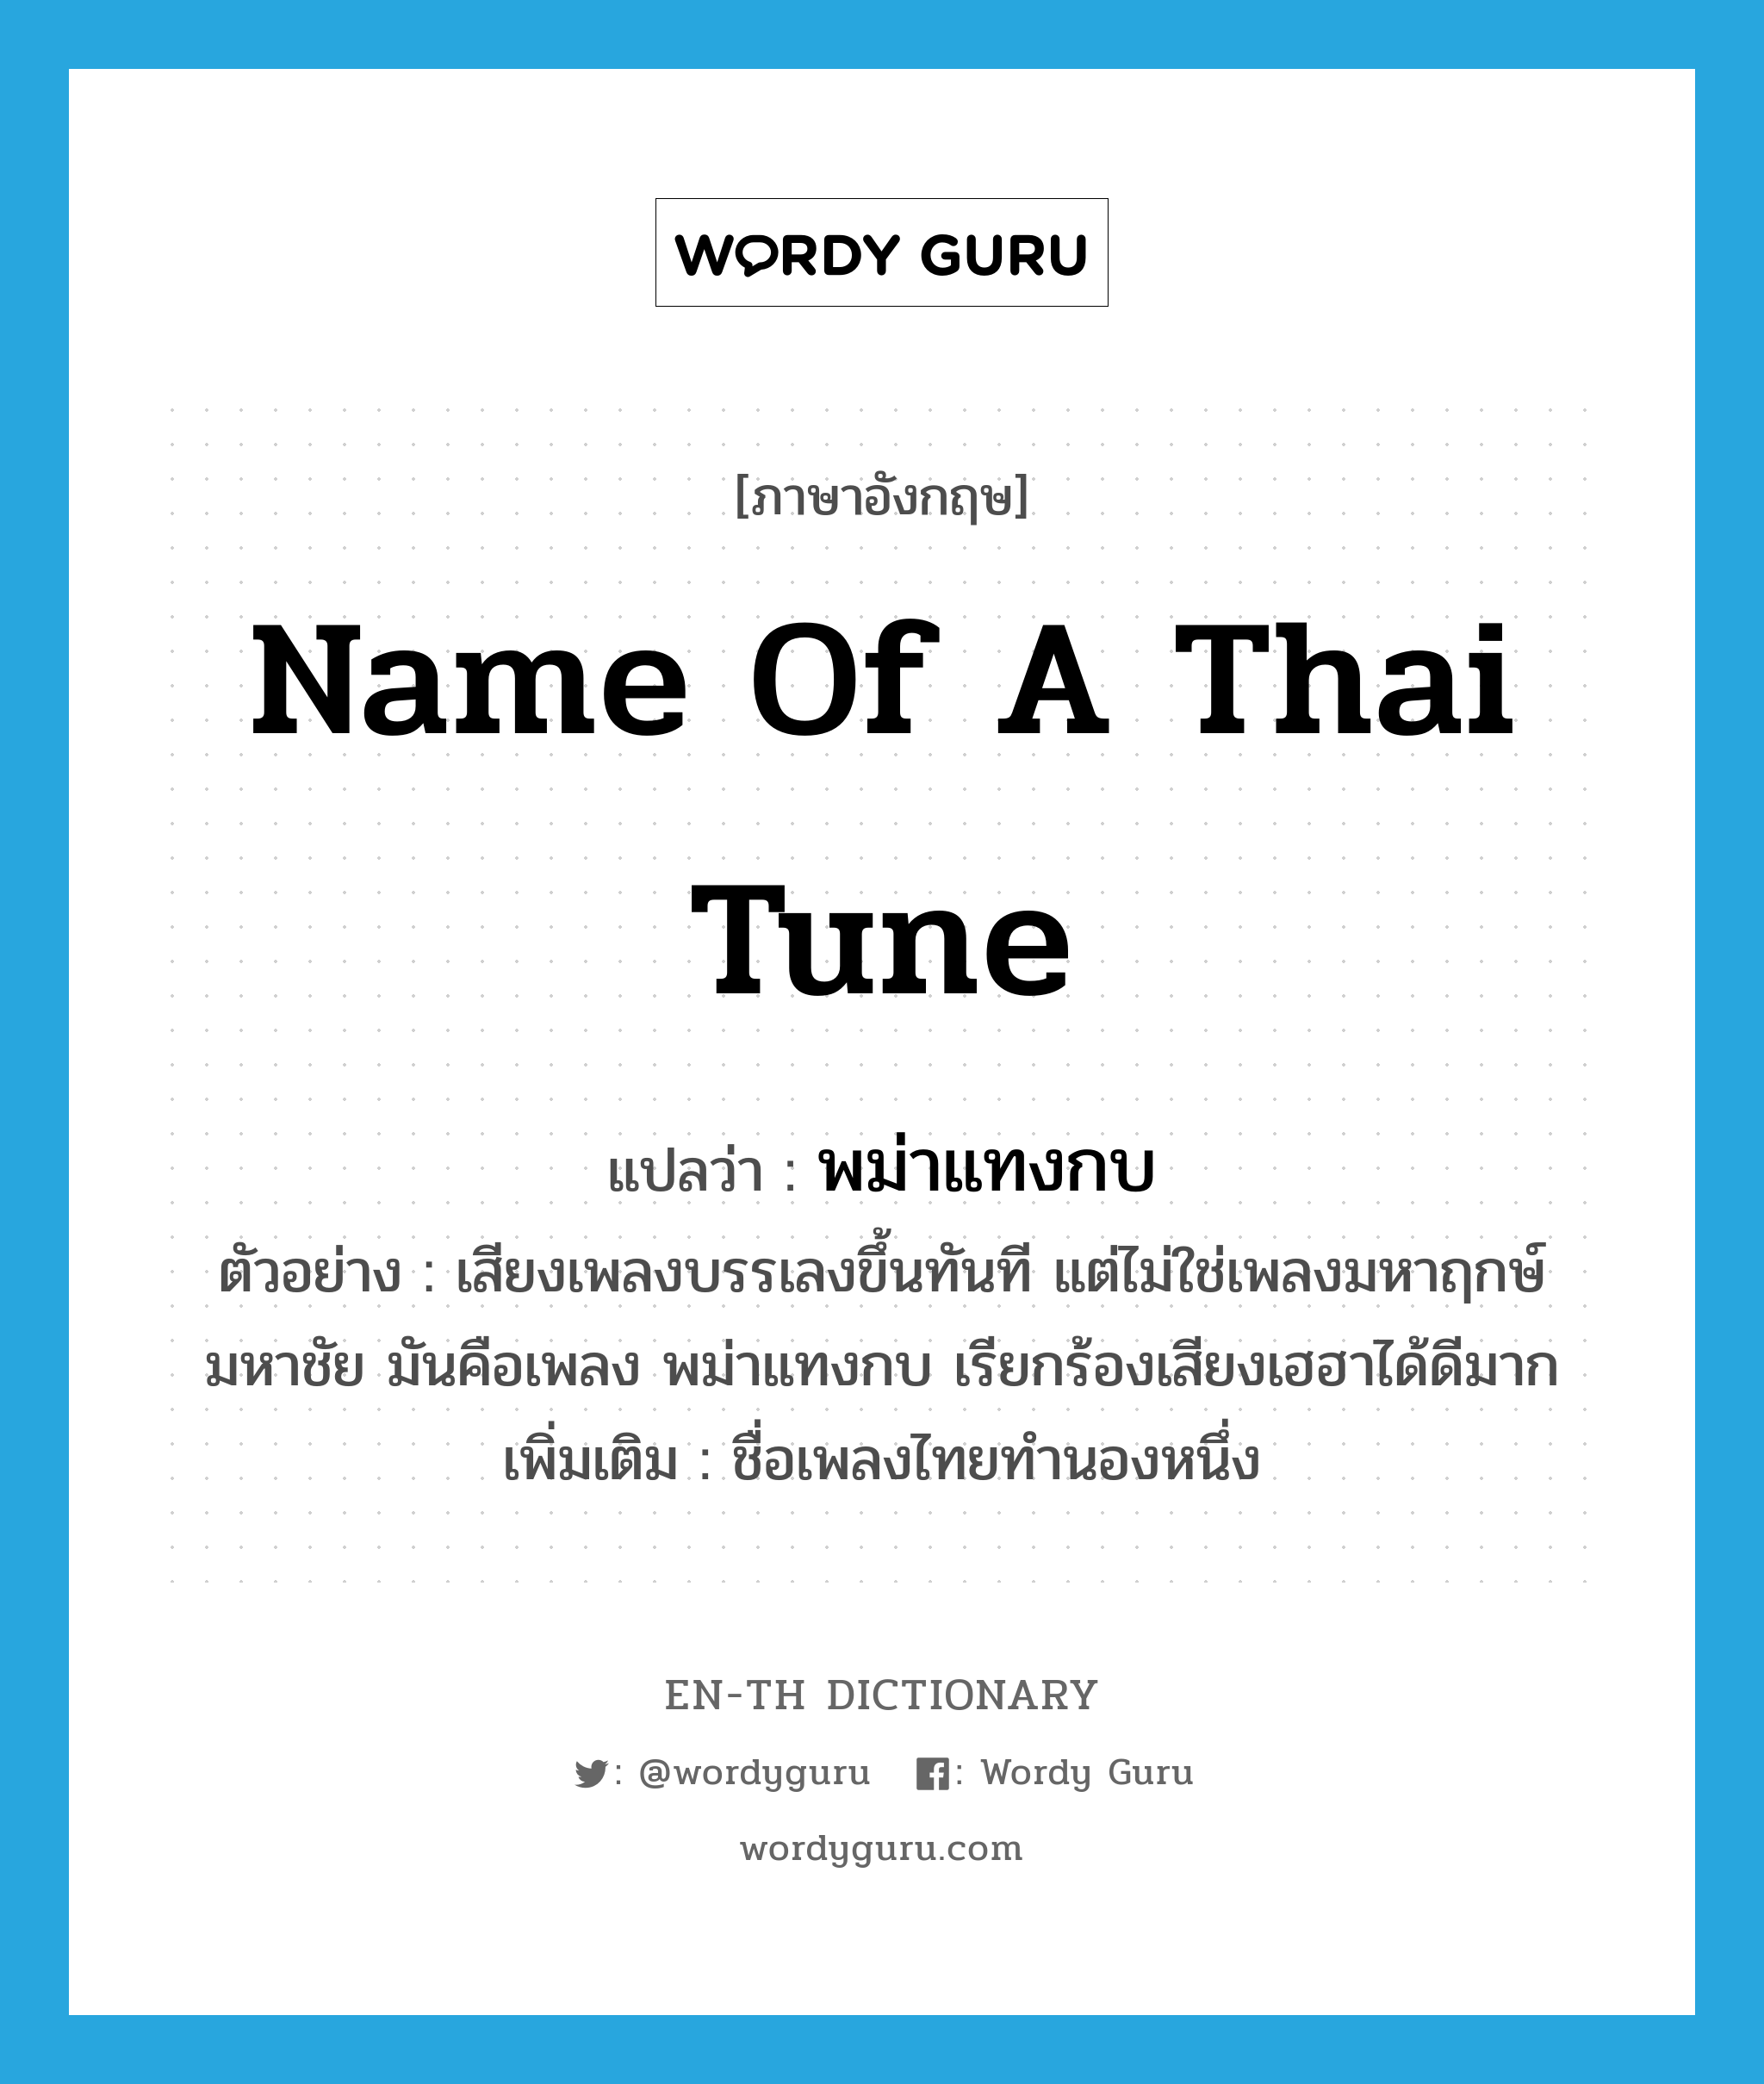 name of a Thai tune แปลว่า?, คำศัพท์ภาษาอังกฤษ name of a Thai tune แปลว่า พม่าแทงกบ ประเภท N ตัวอย่าง เสียงเพลงบรรเลงขึ้นทันที แต่ไม่ใช่เพลงมหาฤกษ์มหาชัย มันคือเพลง พม่าแทงกบ เรียกร้องเสียงเฮฮาได้ดีมาก เพิ่มเติม ชื่อเพลงไทยทำนองหนึ่ง หมวด N